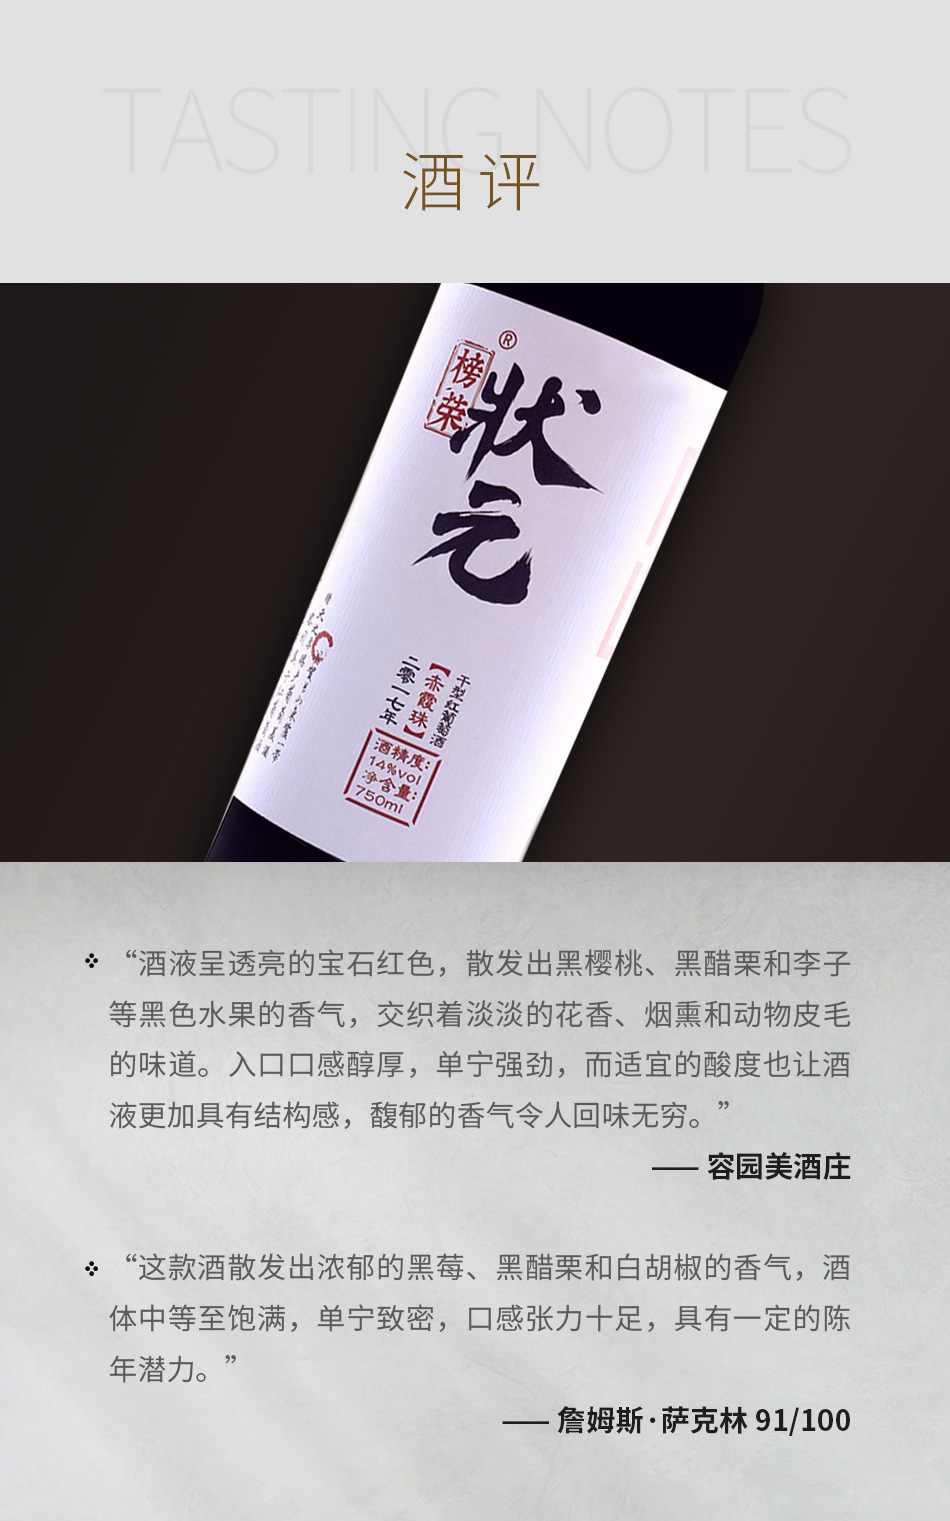 2018年容园美酒庄榜荣状元赤霞珠干红葡萄酒